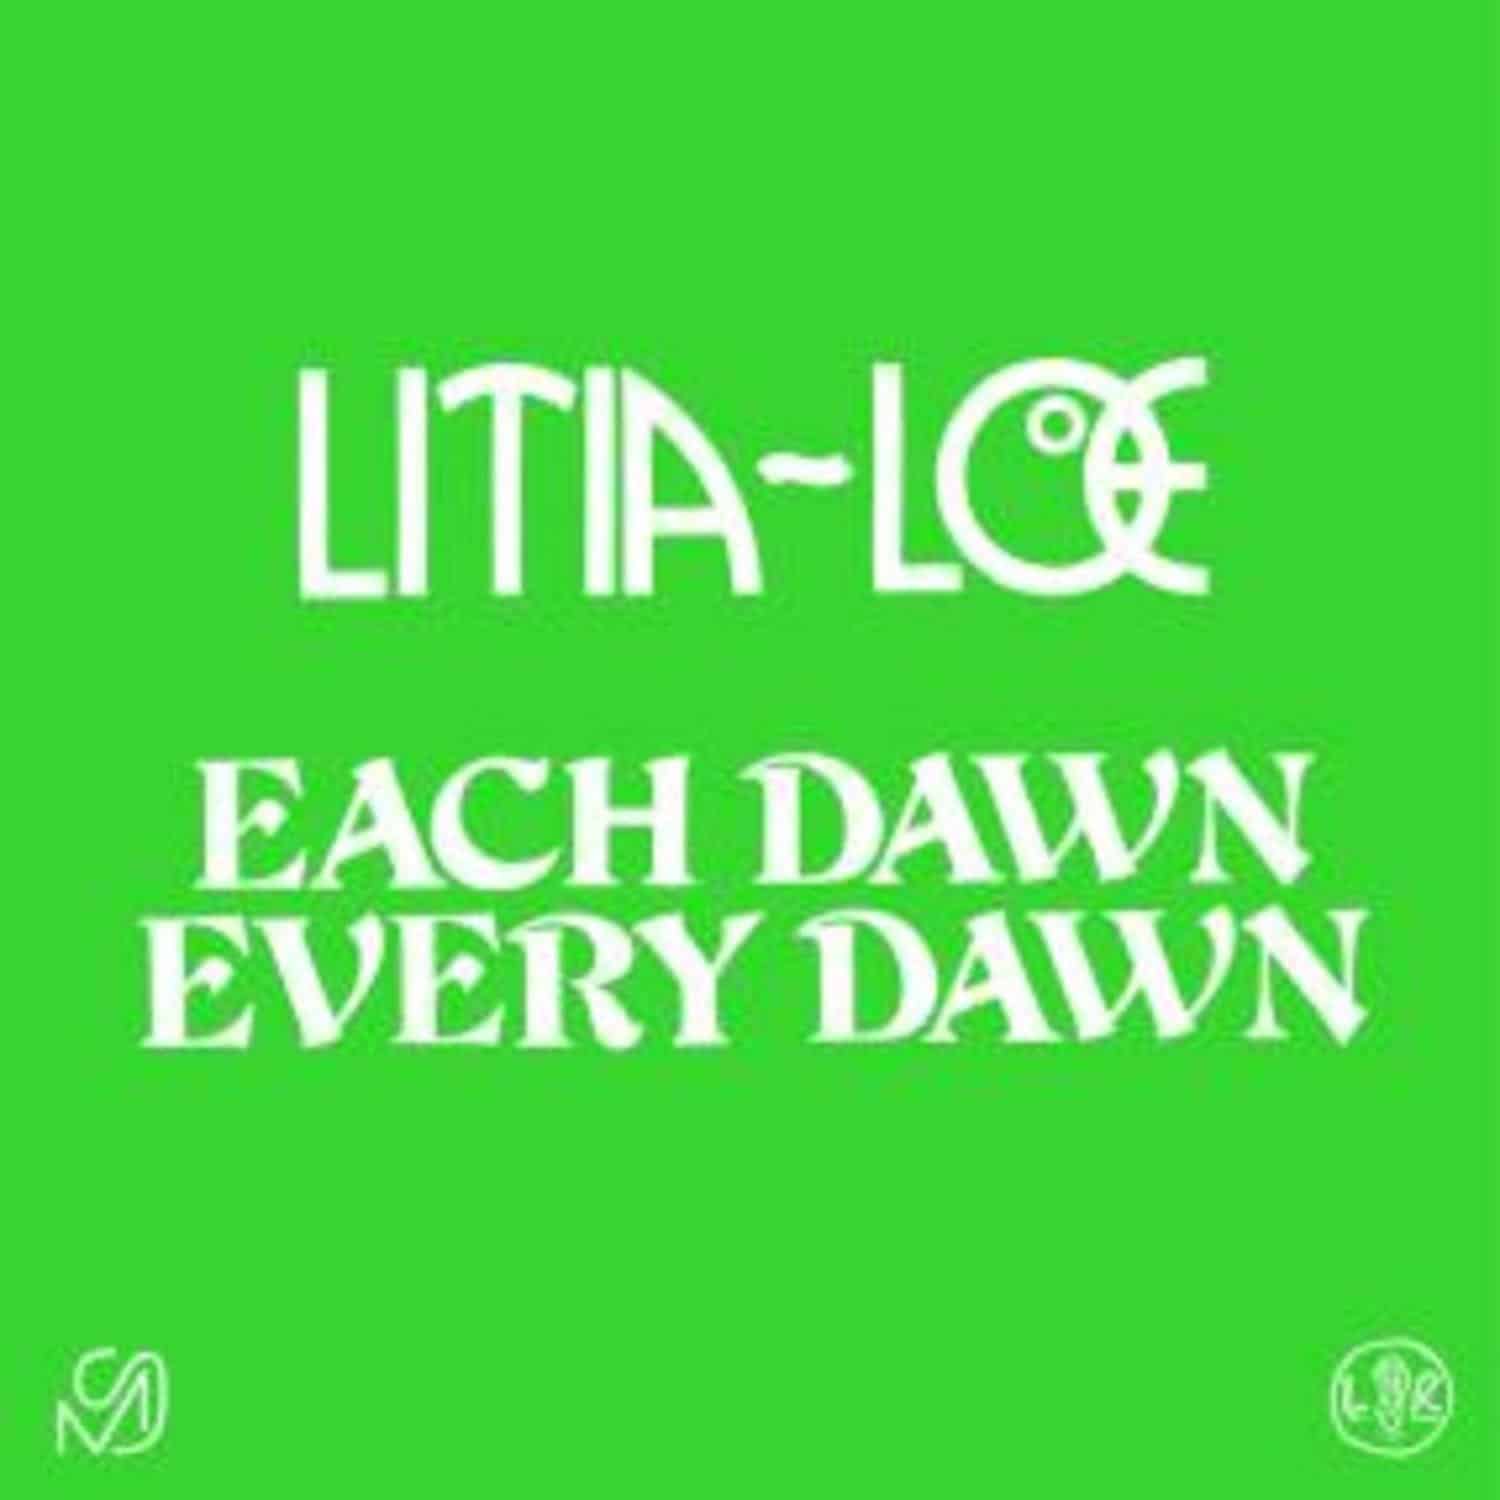 Litia=LOE - EACH DAWN EVERY DAWN